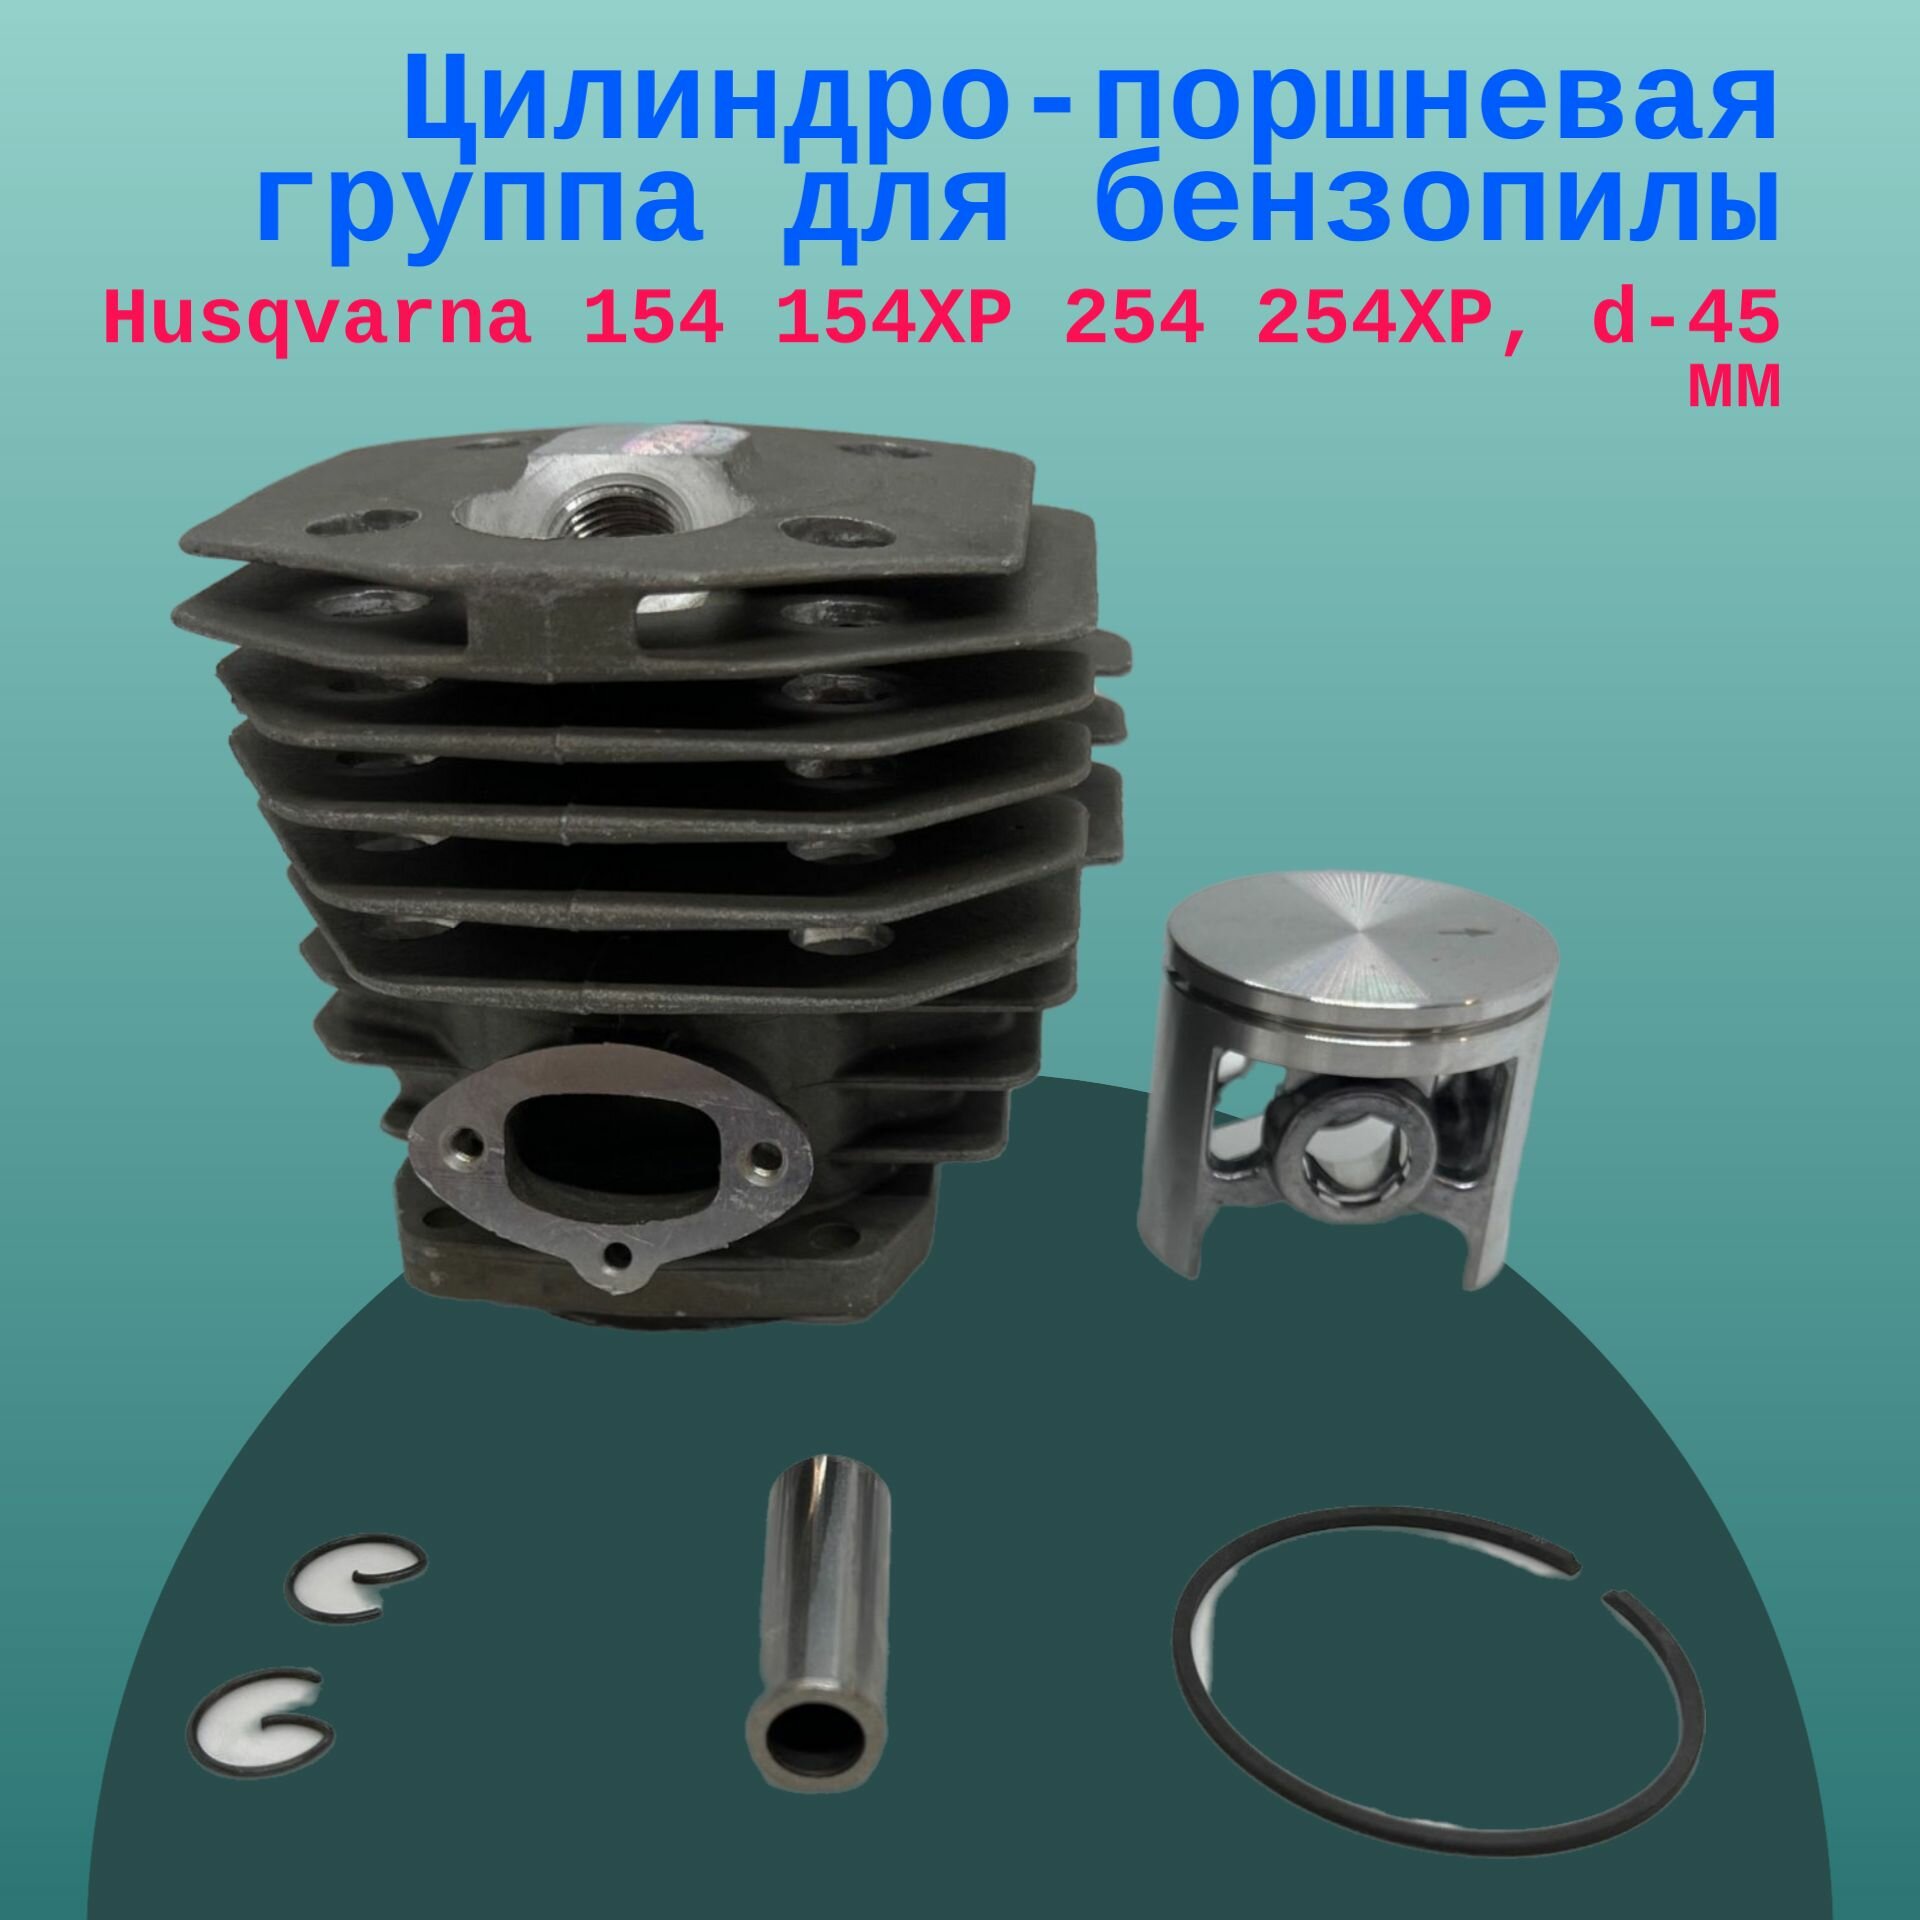 Цилиндро-поршневая группа для бензопилы Husqvarna 154 154XP 254 254XP d-45 мм